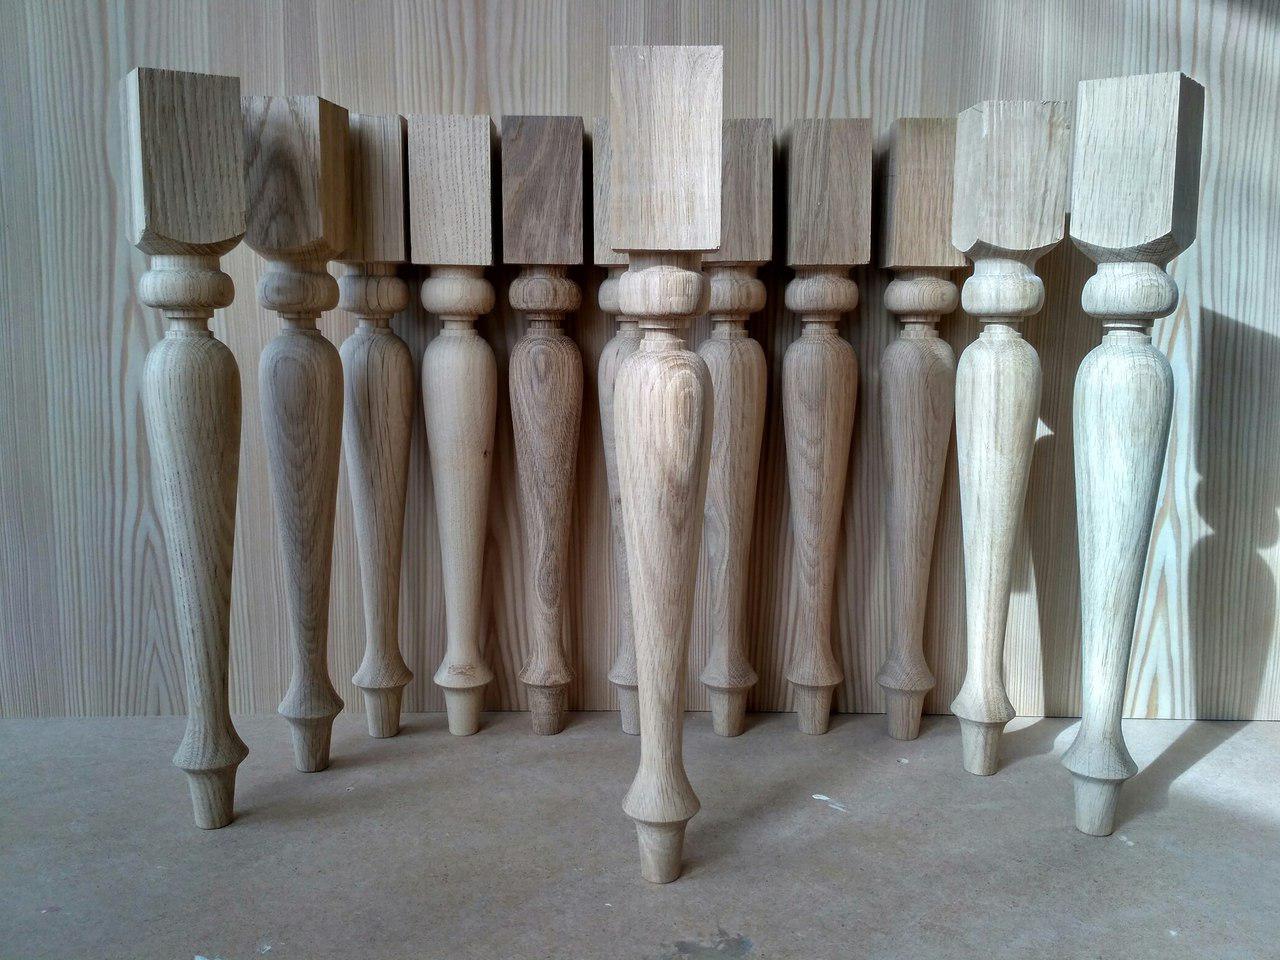 Ножки для стола деревянные